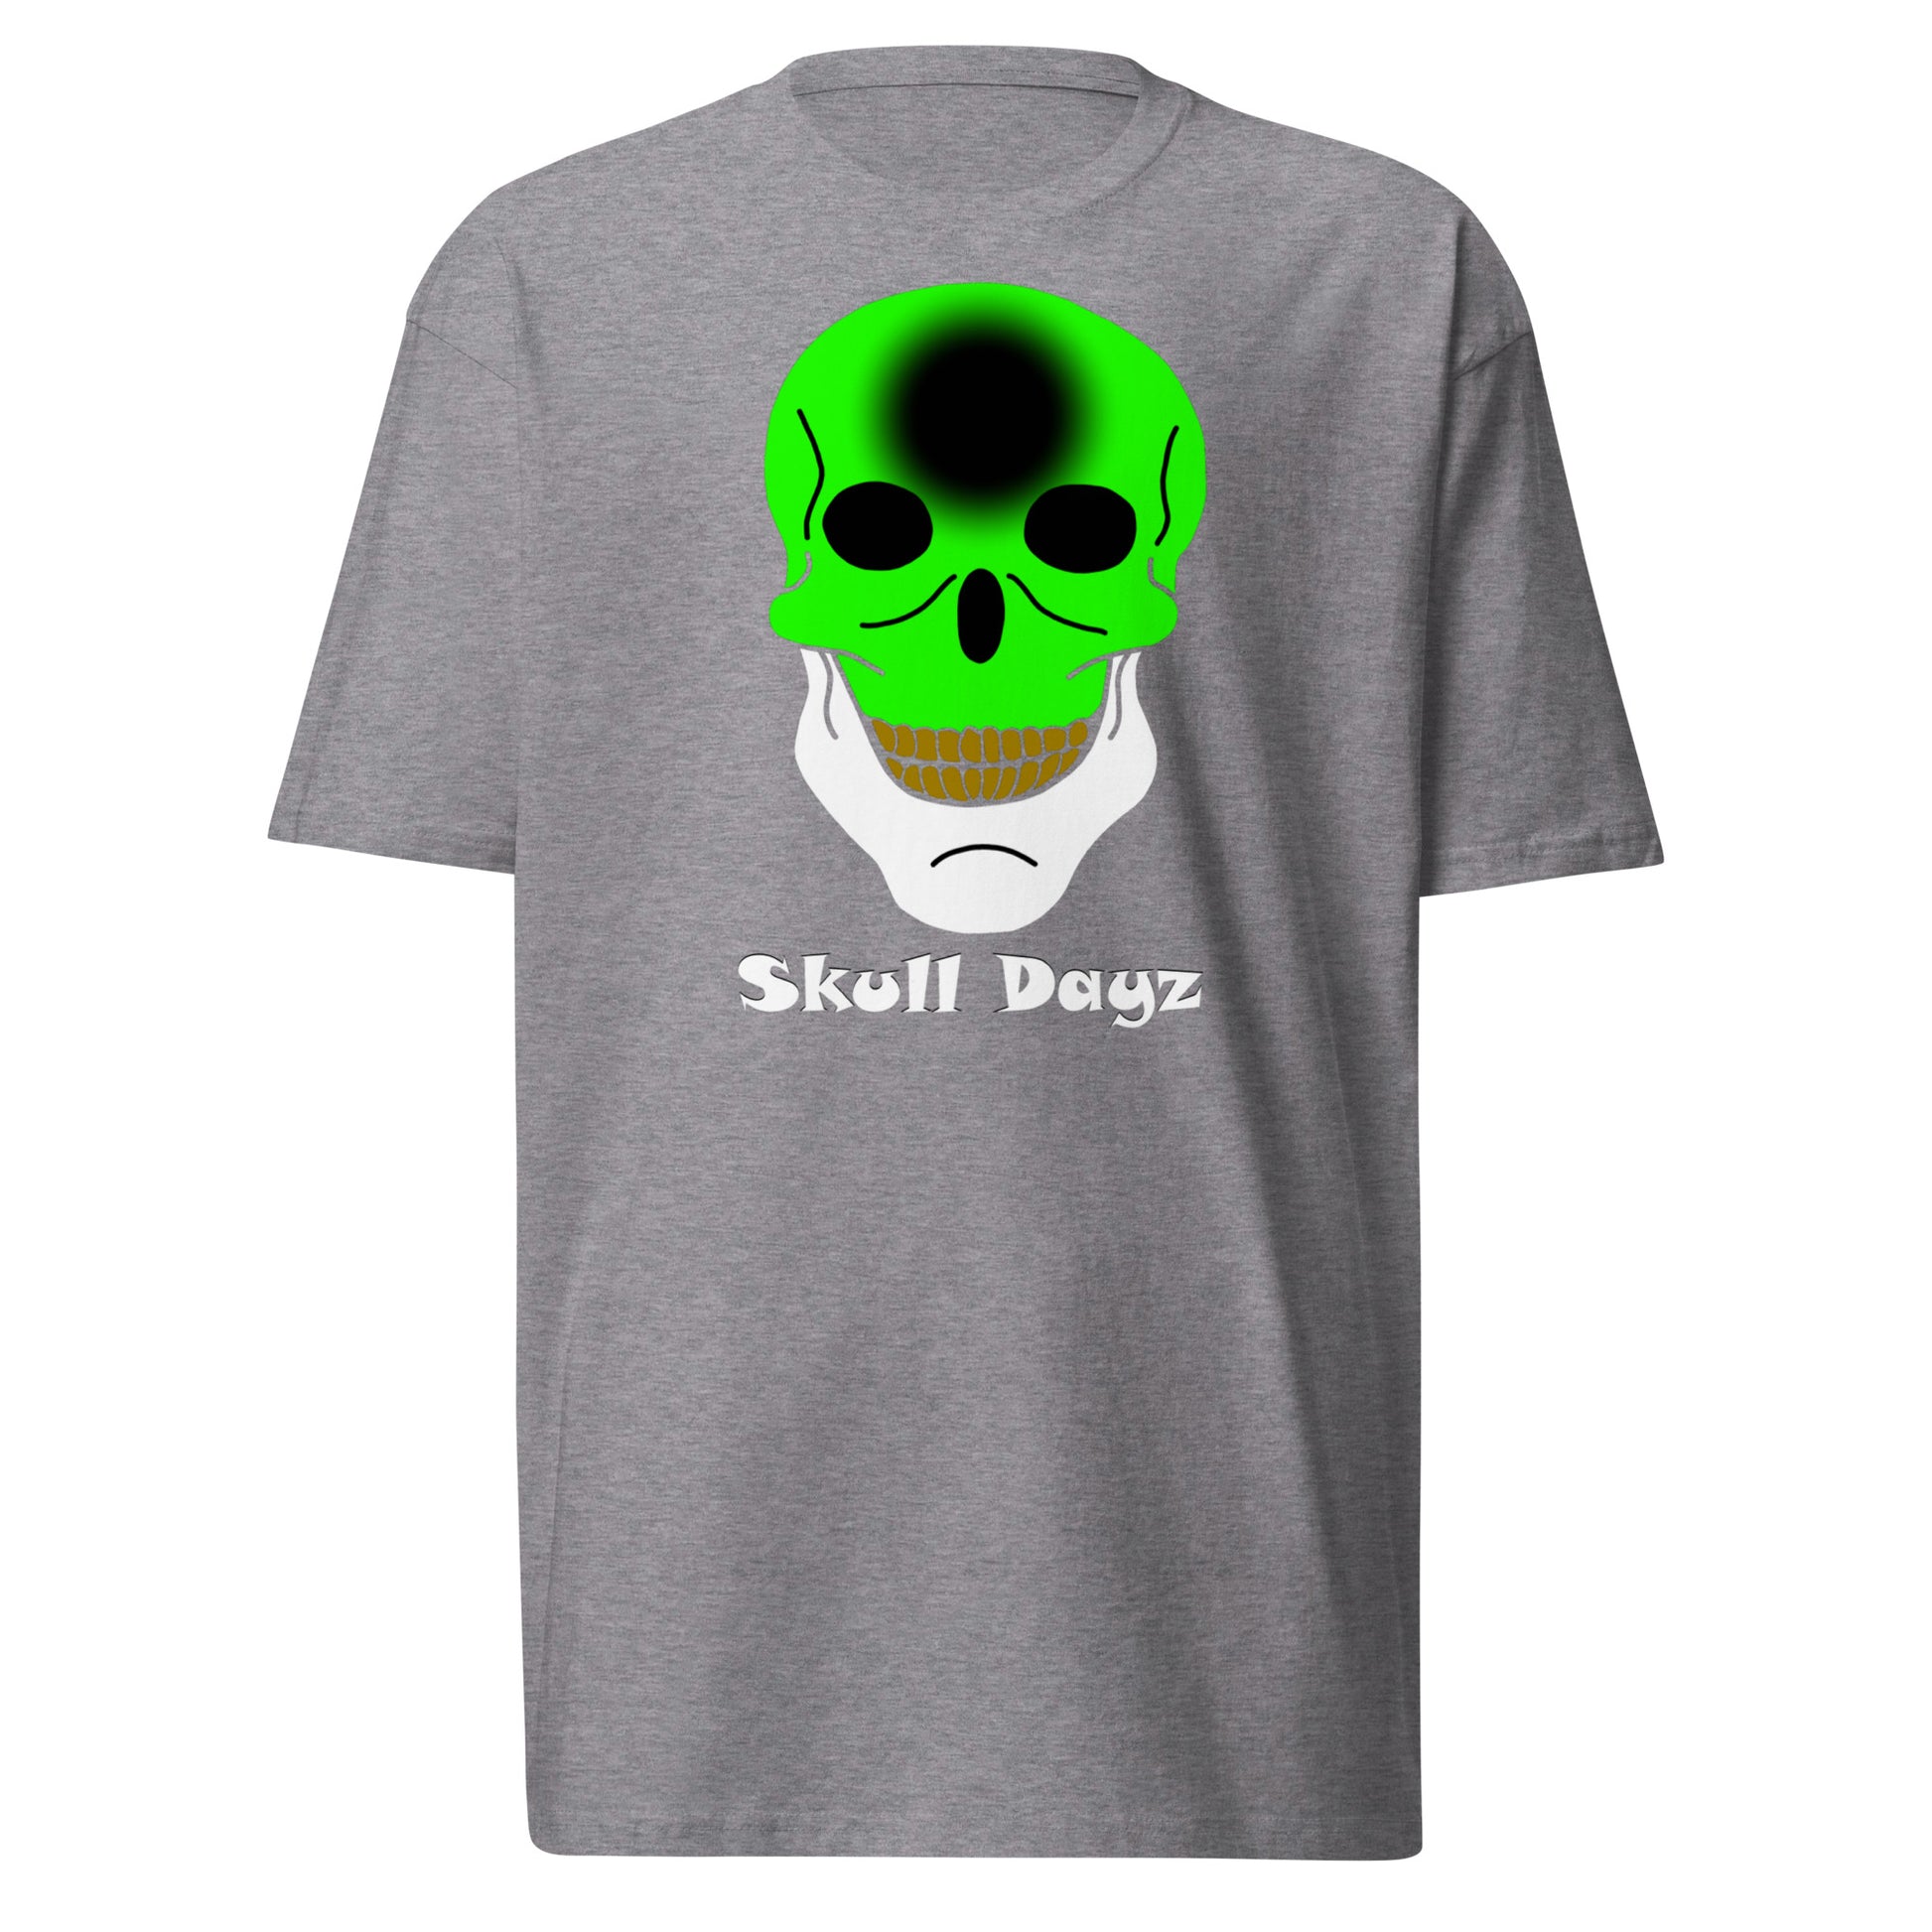 Skull Dayz tee - Skull Dayz